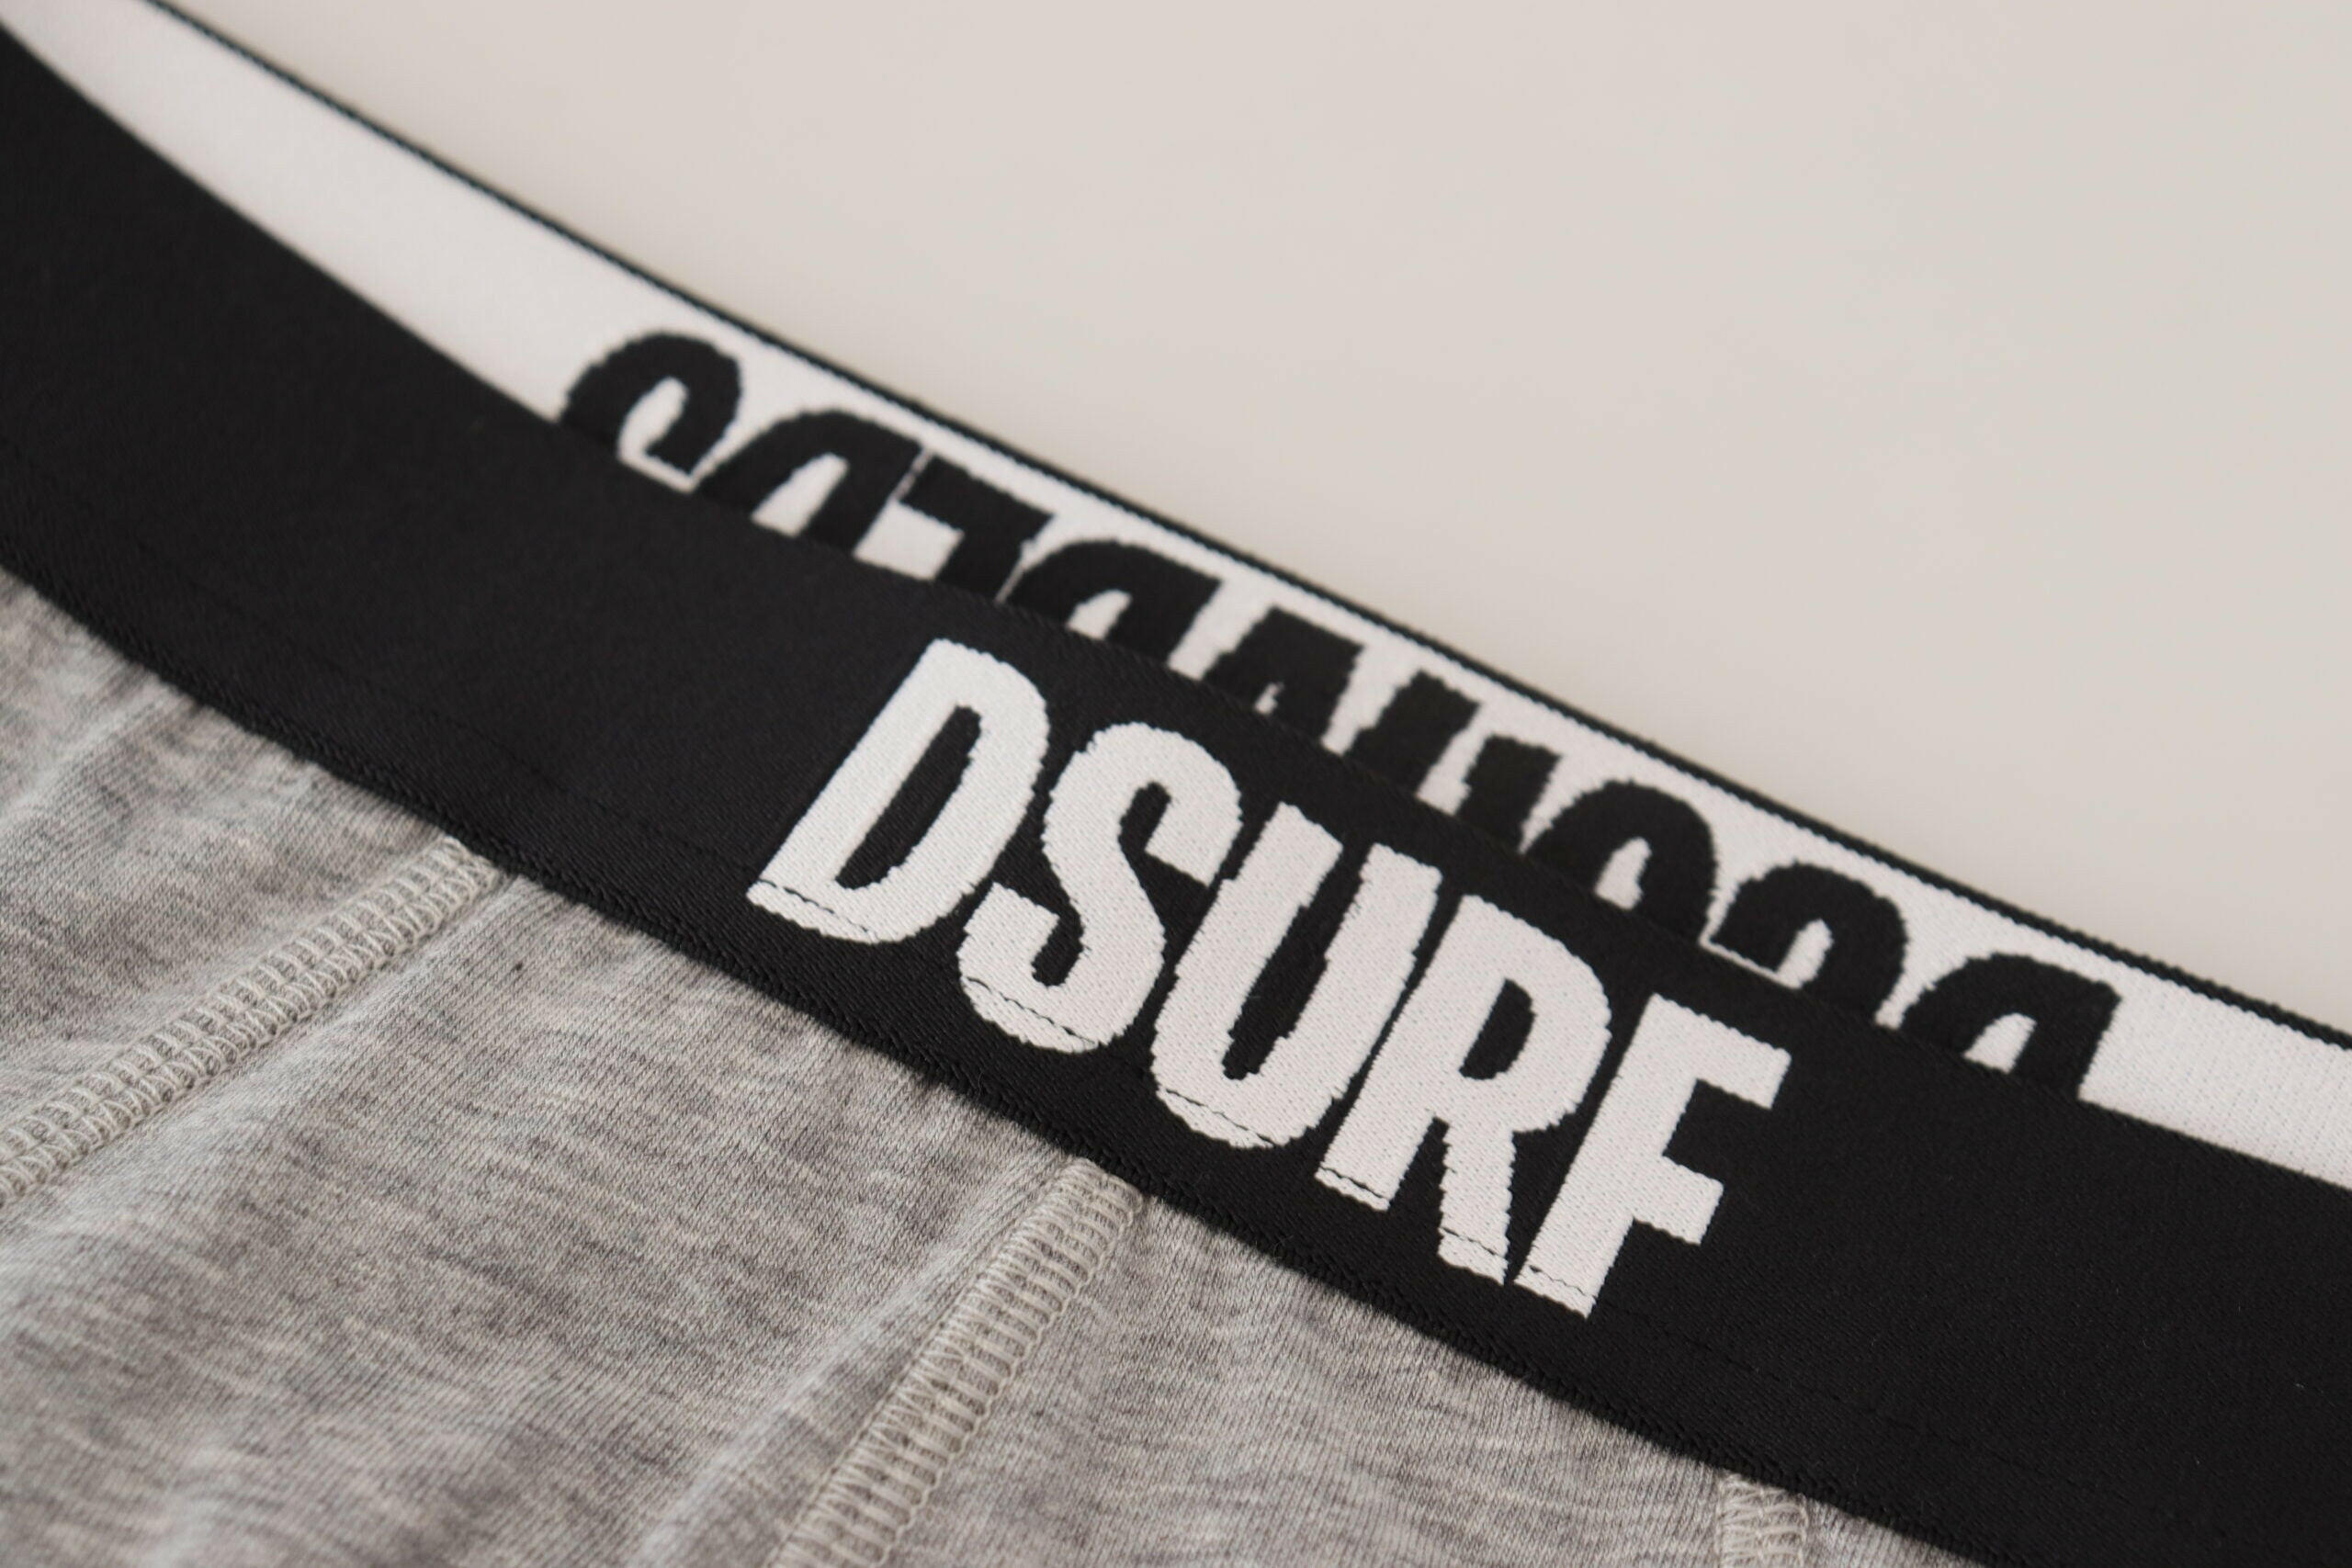 Dsquared² Gray DSURF Logo Cotton Stretch Men Brief Underwear - GENUINE AUTHENTIC BRAND LLC  